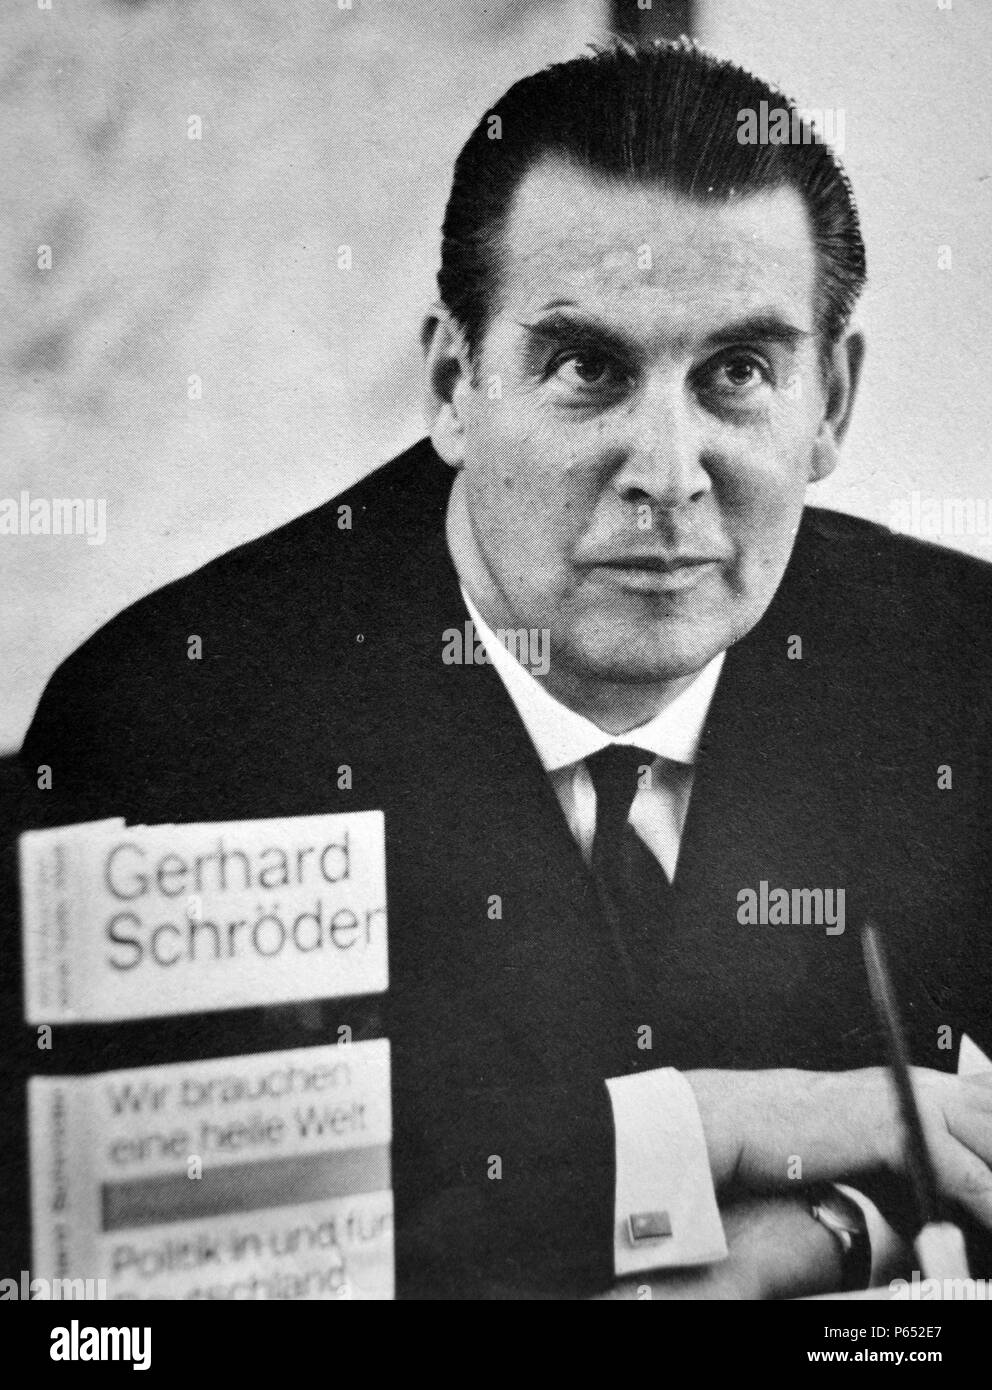 Gerhard Schröder (1910 - 31. Dezember 1989) westdeutsche Politiker und Mitglied der Christlich Demokratischen Union (CDU) Party. Er diente als Bundesminister des Innern von 1953 bis 1961 als Außenminister von 1961 bis 1966, und als Verteidigungsminister von 1966 bis 1969. Bei den Wahlen von 1969, die er für das Amt des Präsidenten der Bundesrepublik Deutschland lief, war aber outpolled von Gustav Heinemann Stockfoto